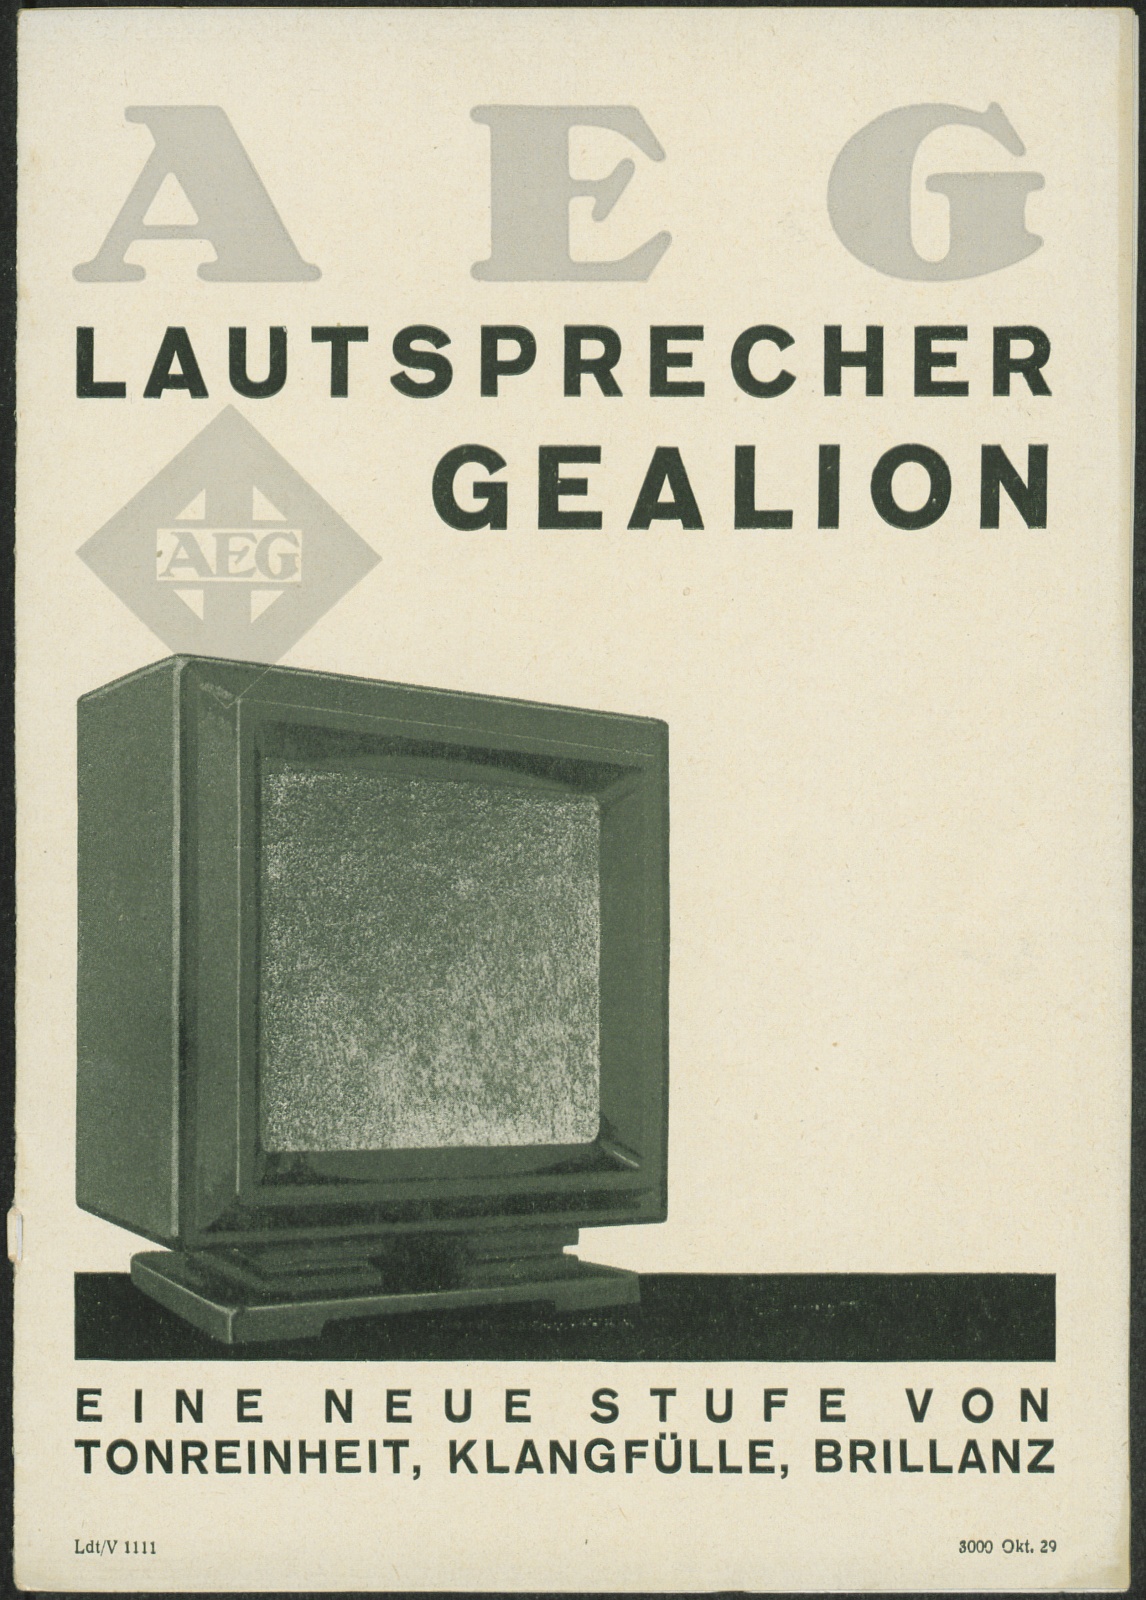 Bedienungsanleitung: AEG Lautsprecher Gealion (Stiftung Deutsches Technikmuseum Berlin CC0)